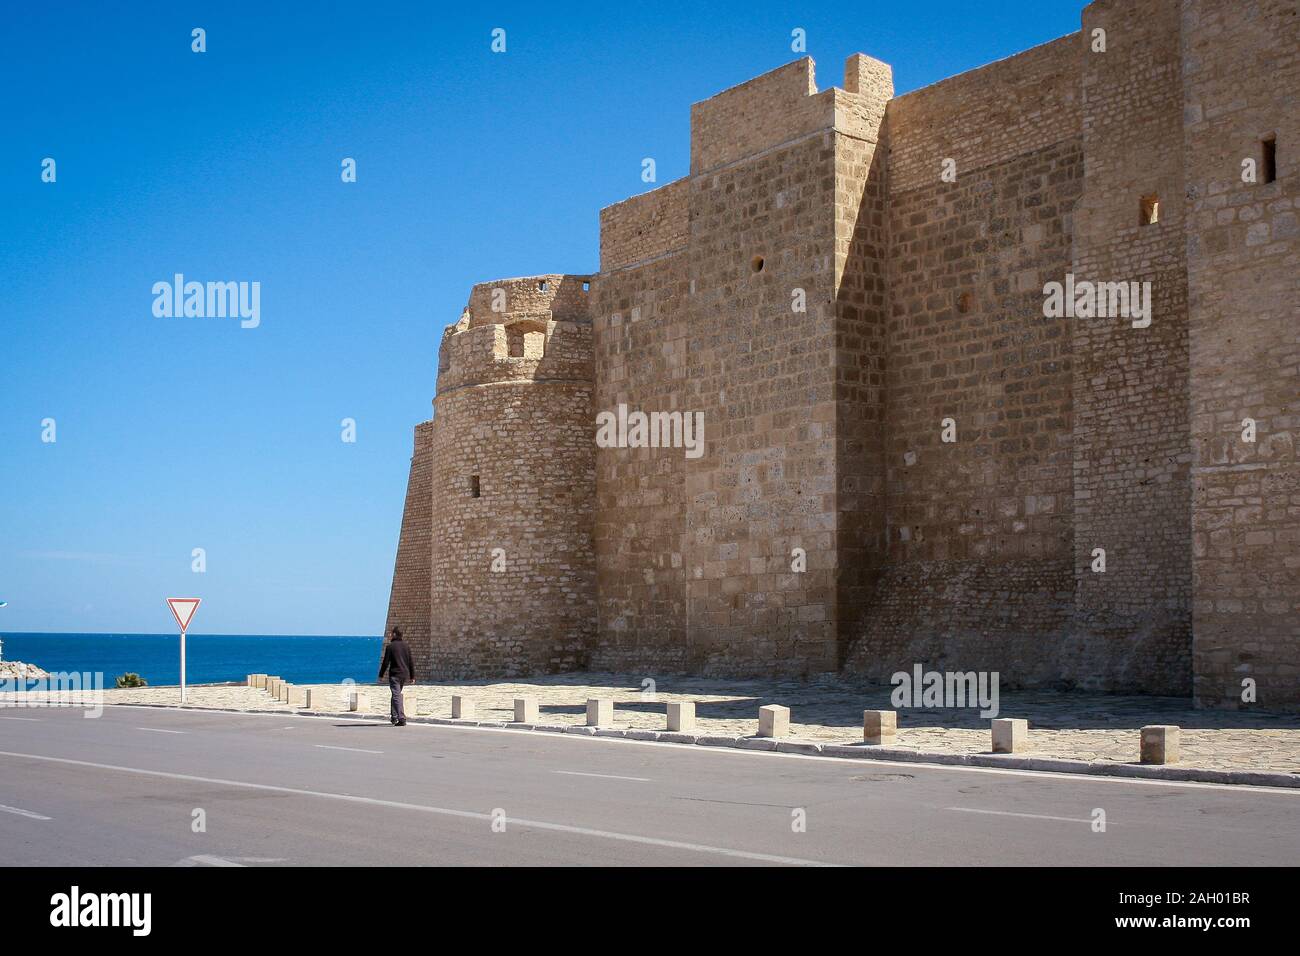 Torre di Ribat vista dalla distanza. Questa fortificazione costiera dell'VIII secolo, estesa e ben conservata, è oggi sede del Museo d'Arte Islamica di Monastir, Tunisia Foto Stock